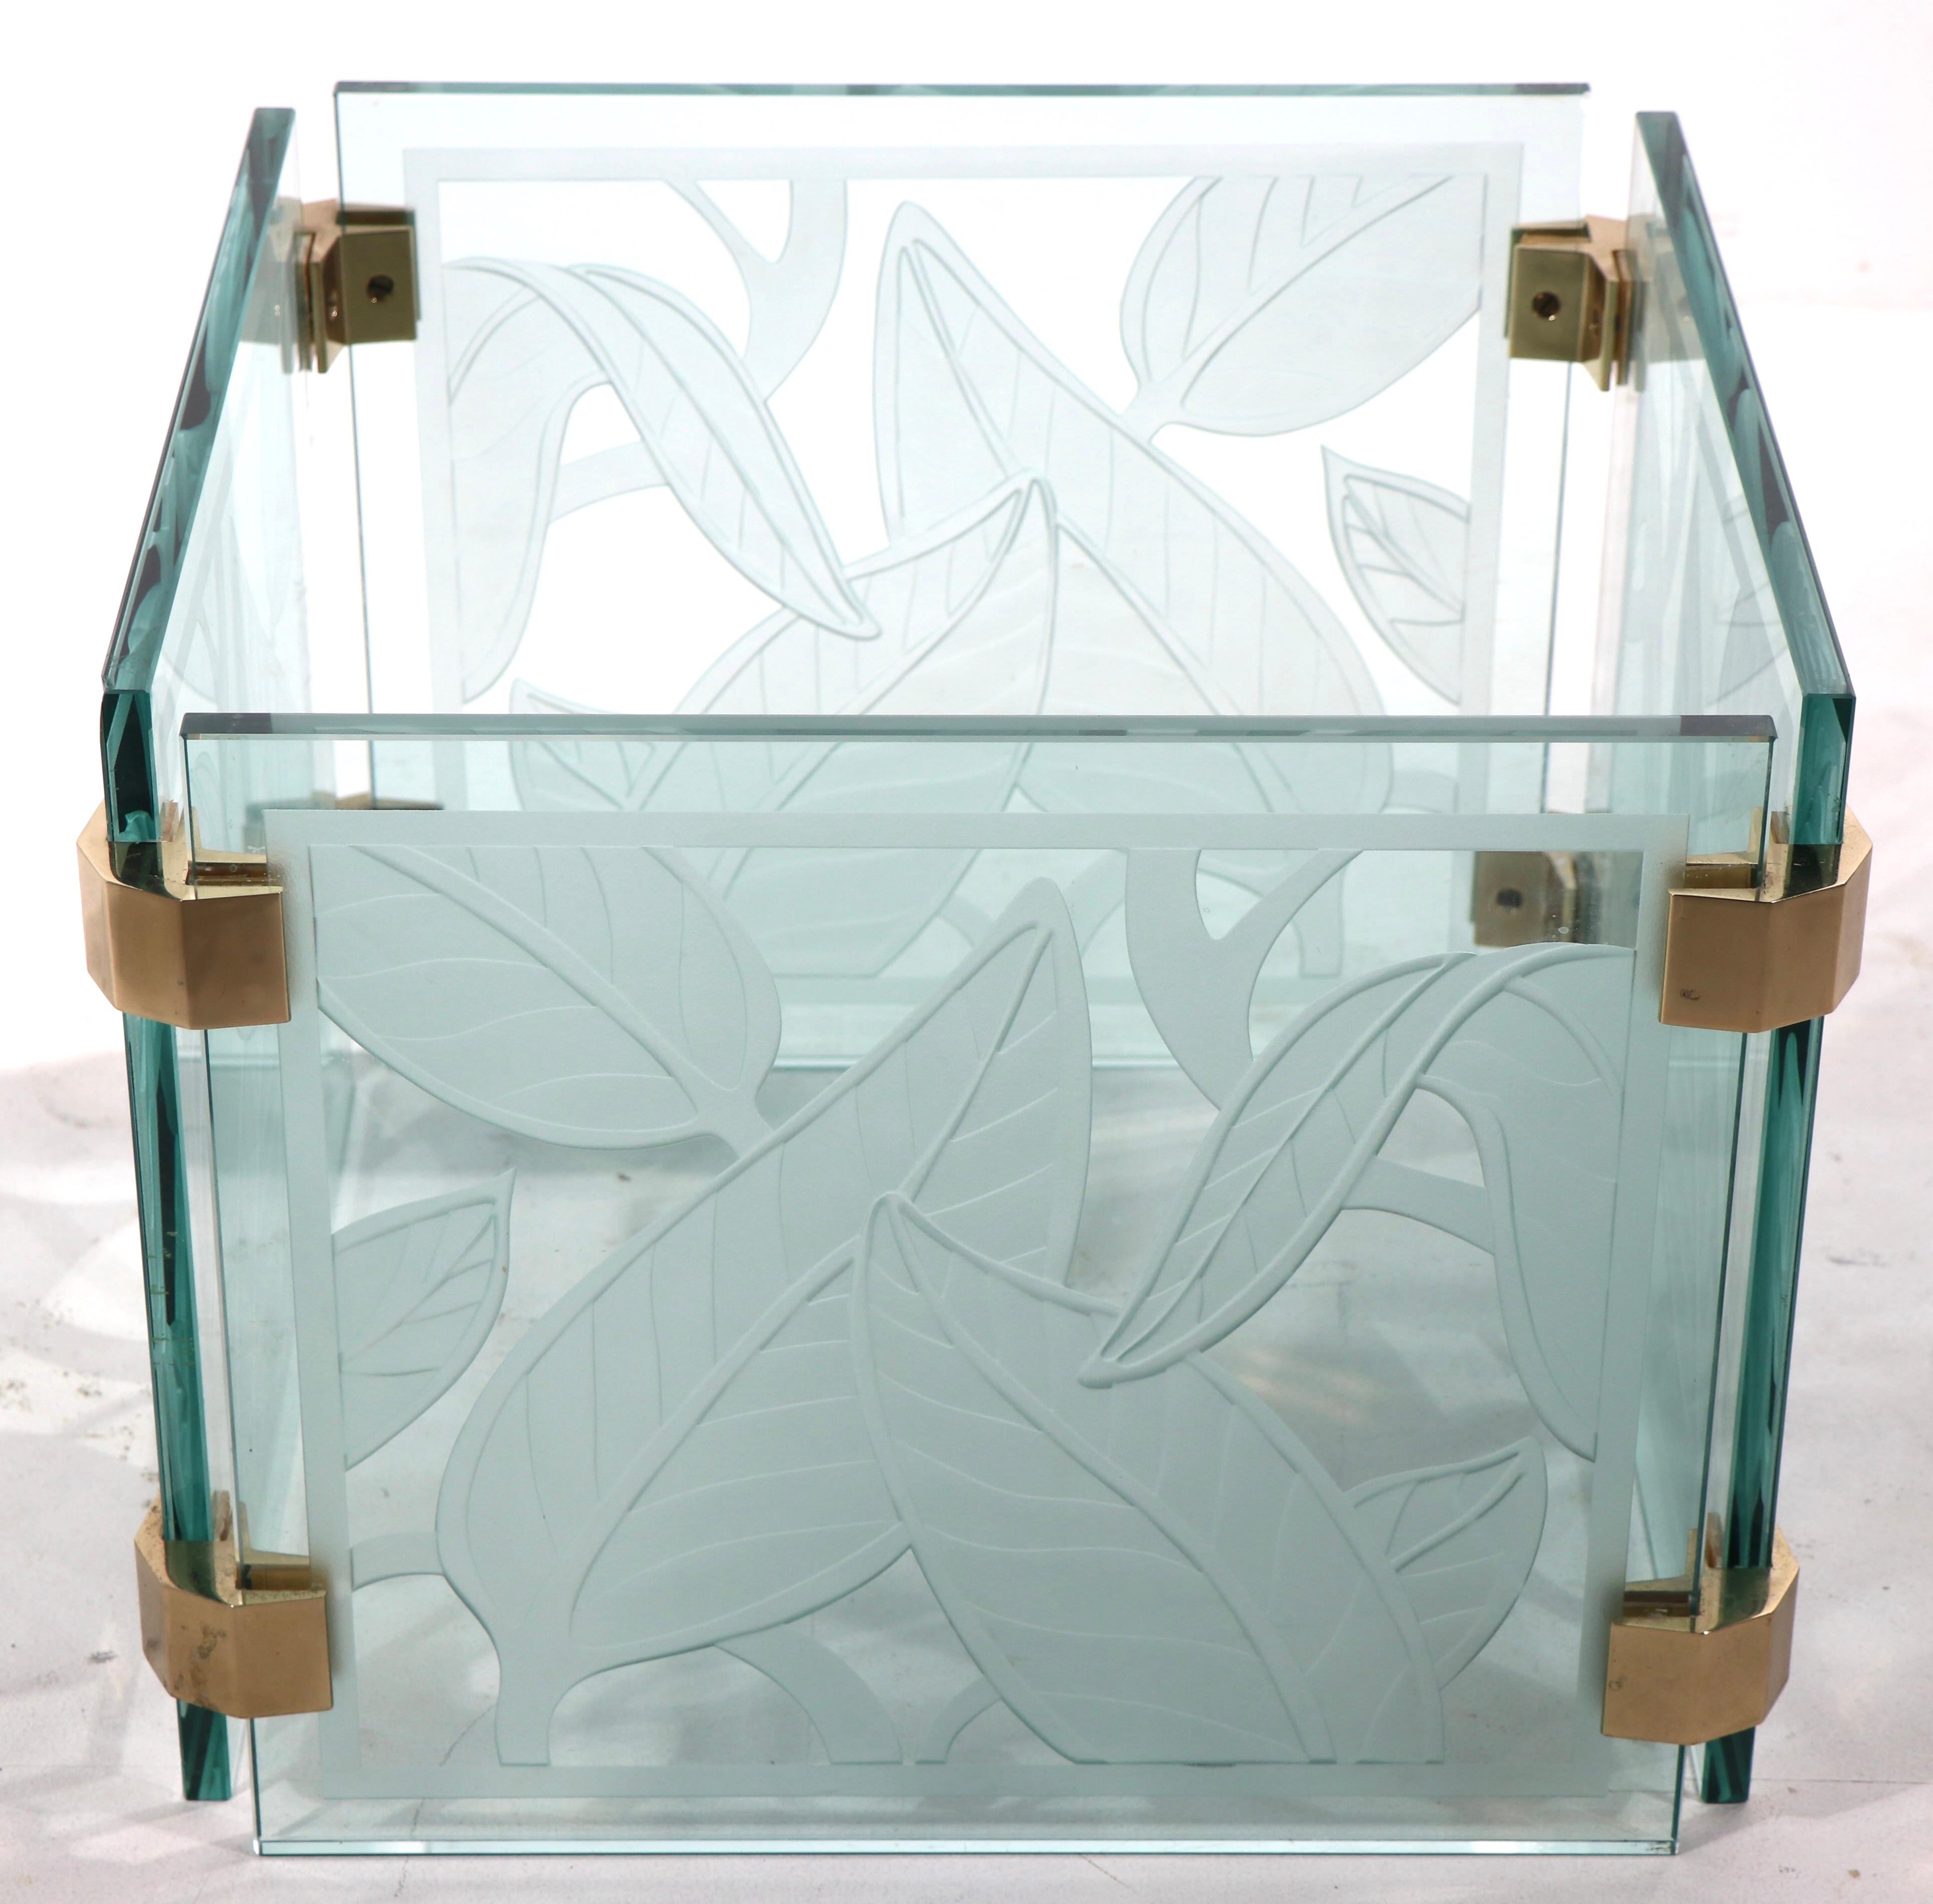 Table basse moderne en verre de style voguish et chic, avec un plateau rectangulaire biseauté épais (3/8 po) reposant sur une base carrée segmentée. La base est constituée de quatre panneaux carrés au motif de feuillage tropical profondément gravé,